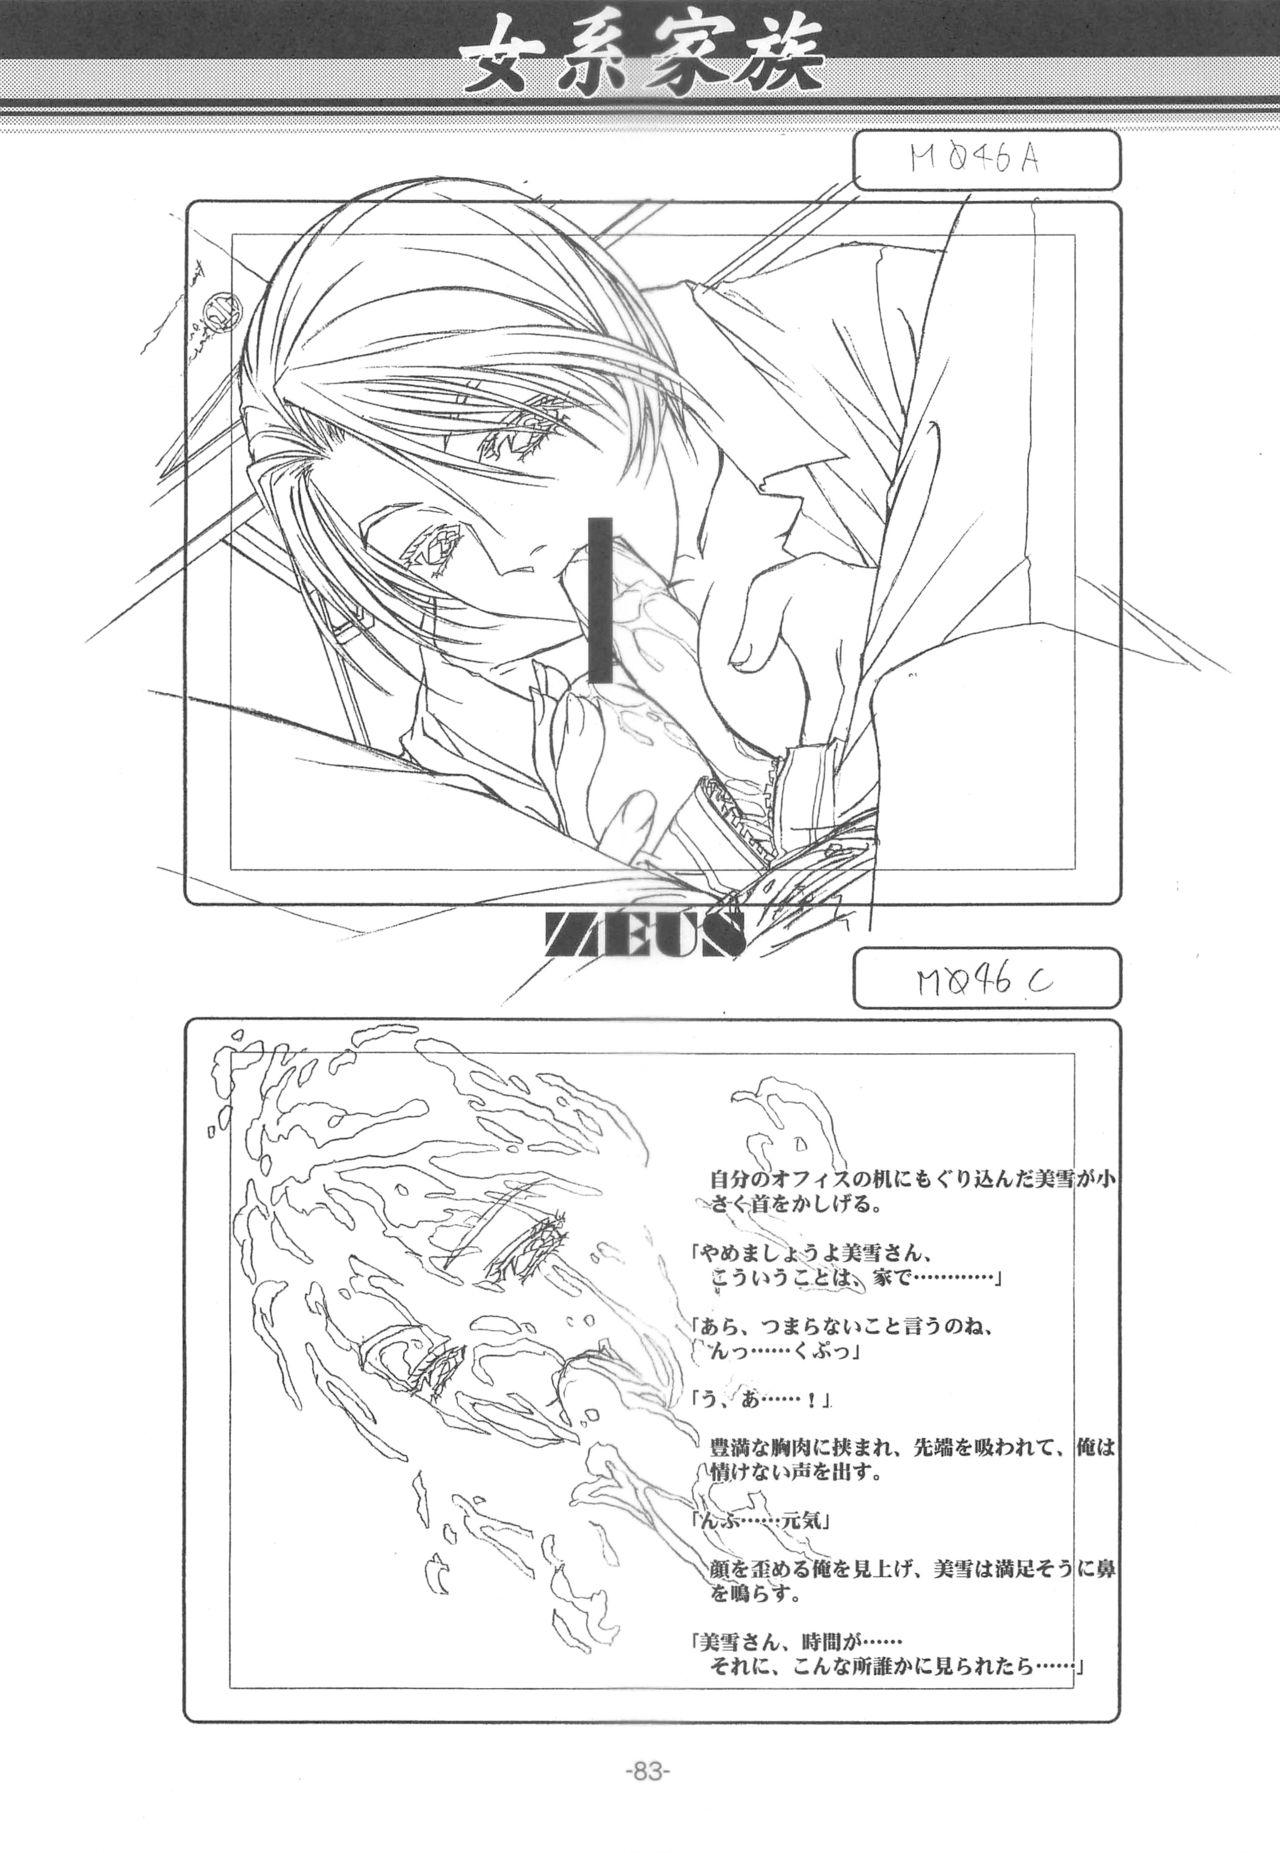 Otonano Do-wa Vol. 14 & Jokei Kazoku Senga shuu 81